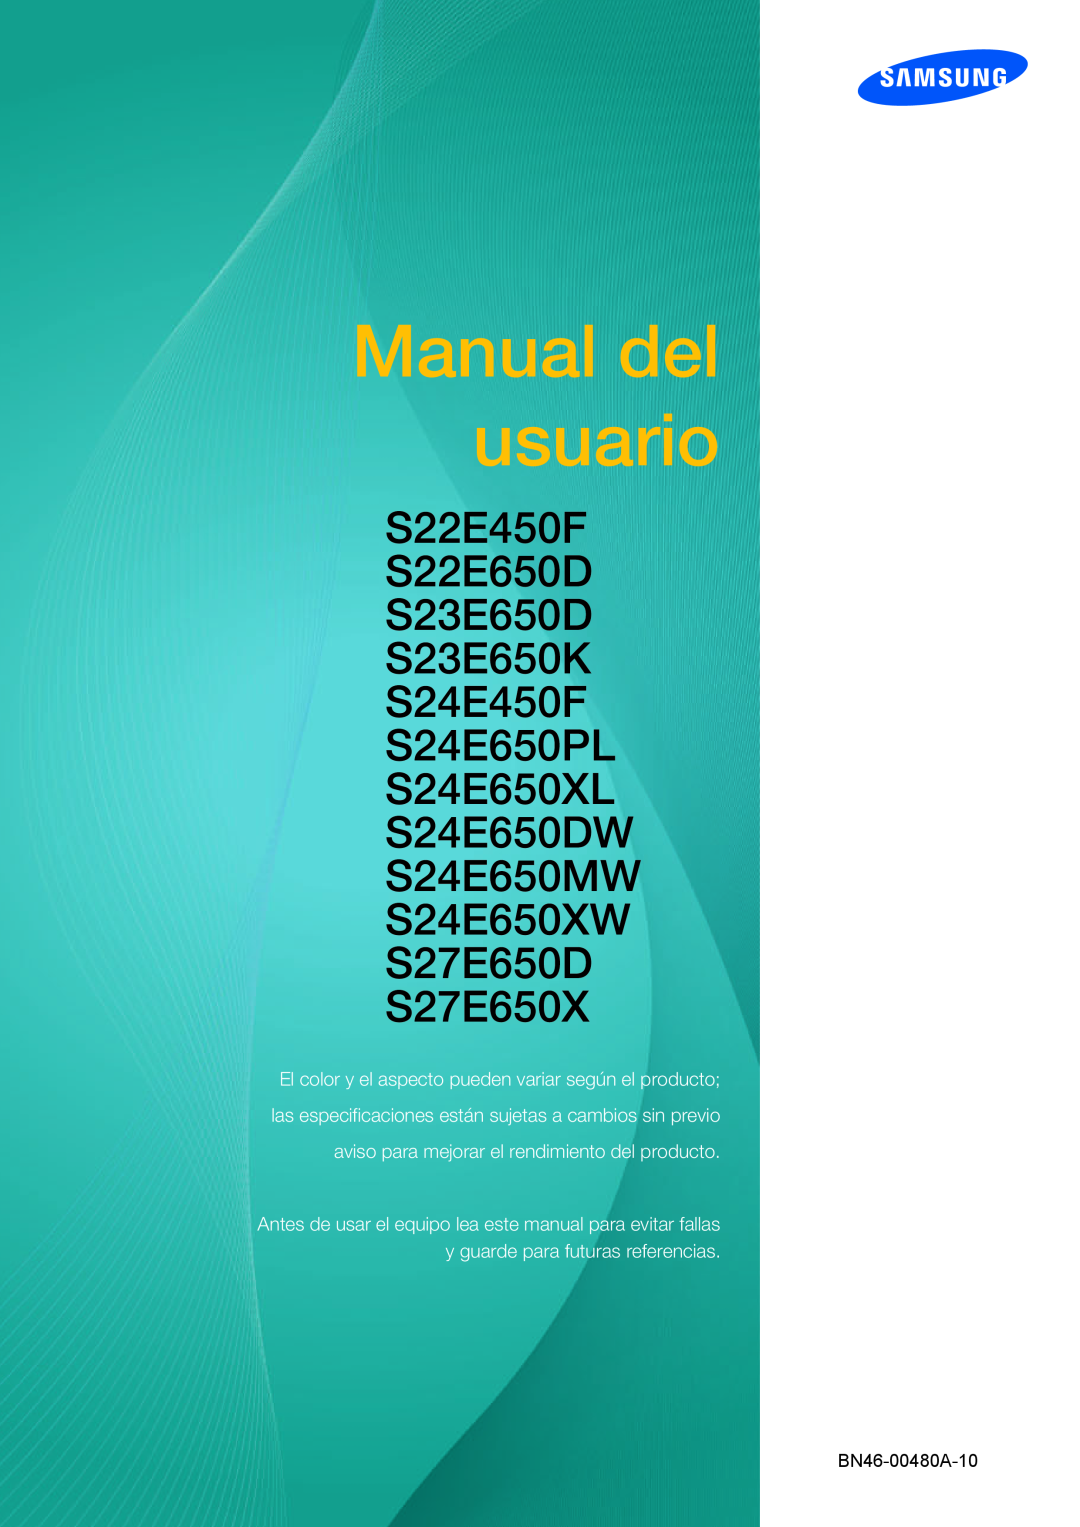 Samsung LS24E65UPL/EN manual Käyttöopas, S22E450F S22E650D S23E650D S23E650K S24E450F S24E650PL S24E650XL, BN46-00480A-10 